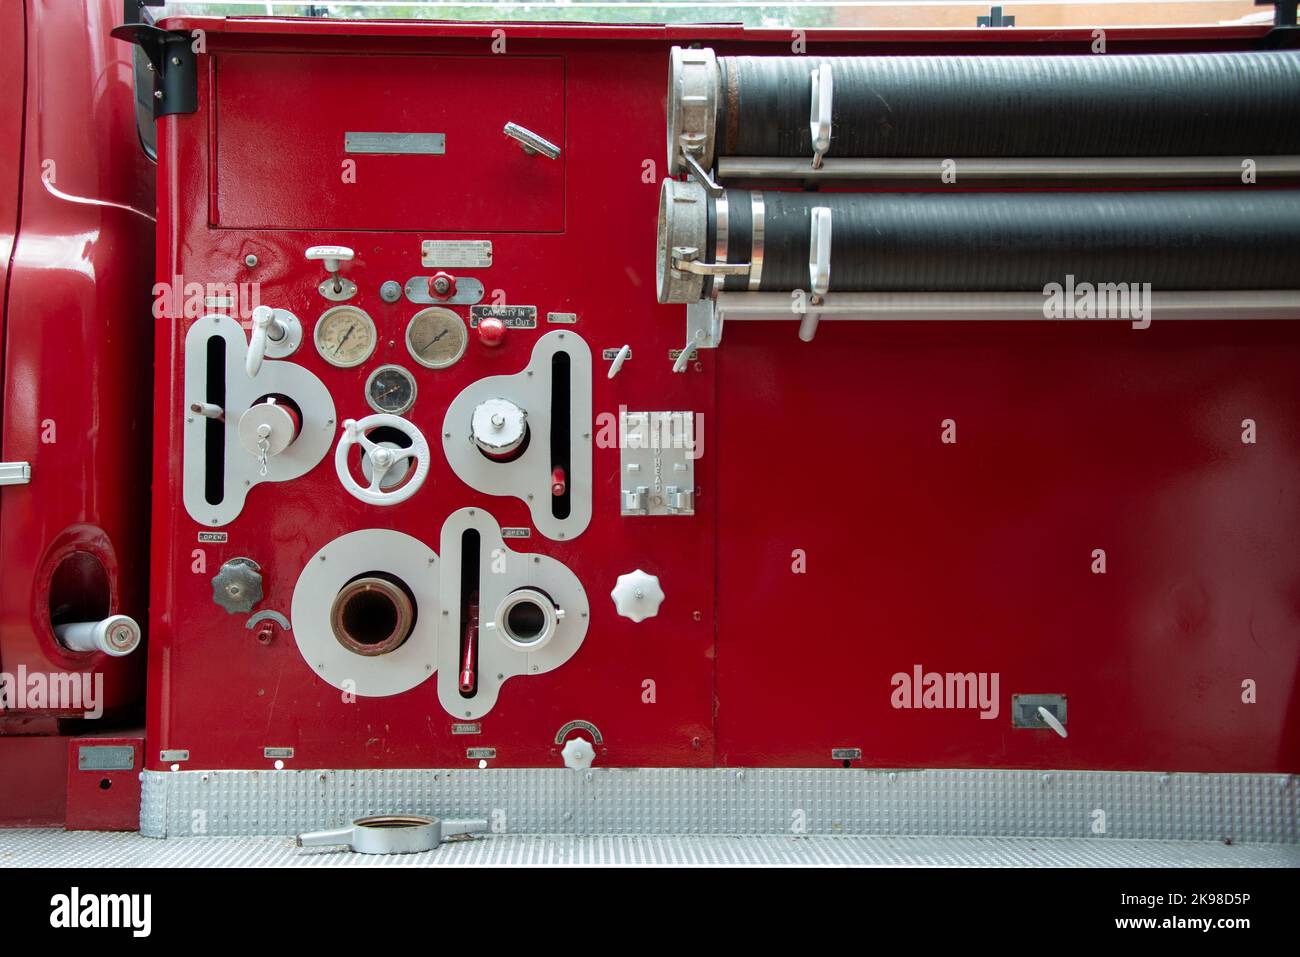 Le tableau de commande d'un camion de pompiers avec manomètres industriels, instruments de mesure, pièces et valves avec boutons d'alarme pour l'équipement. Banque D'Images